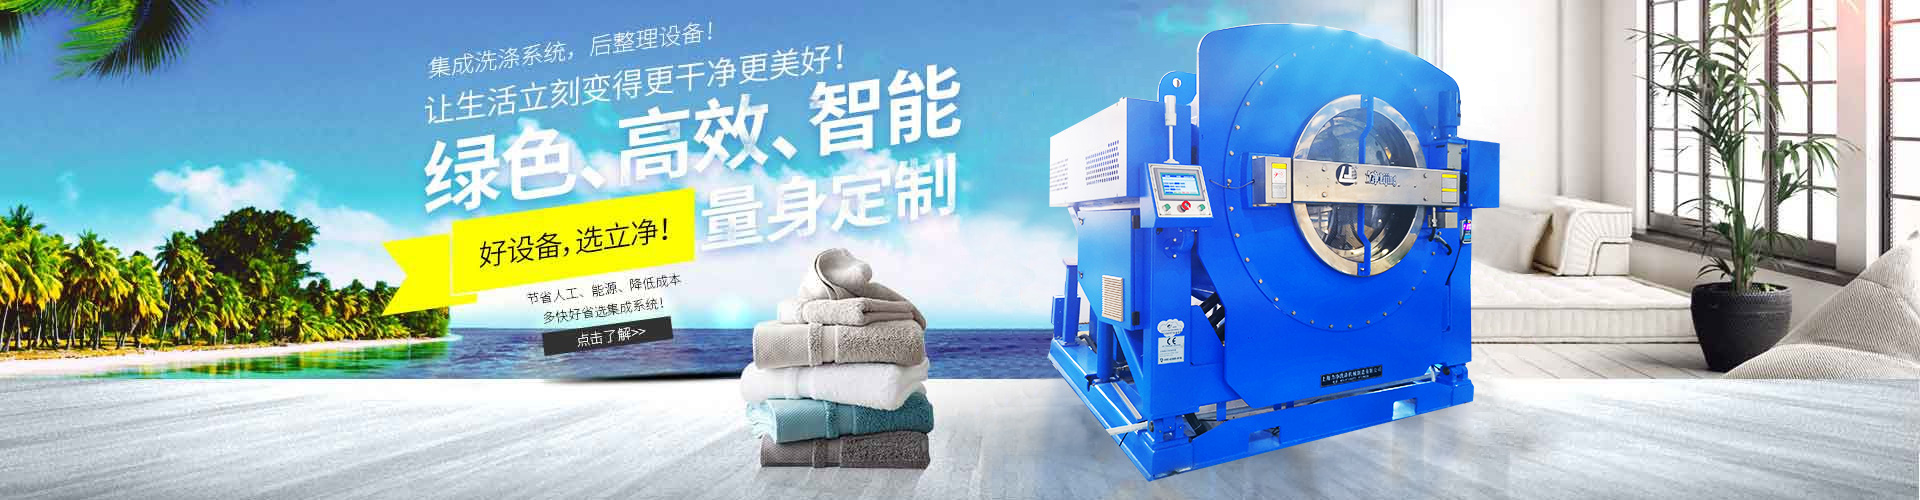 上海long8唯一官方网站水洗设备